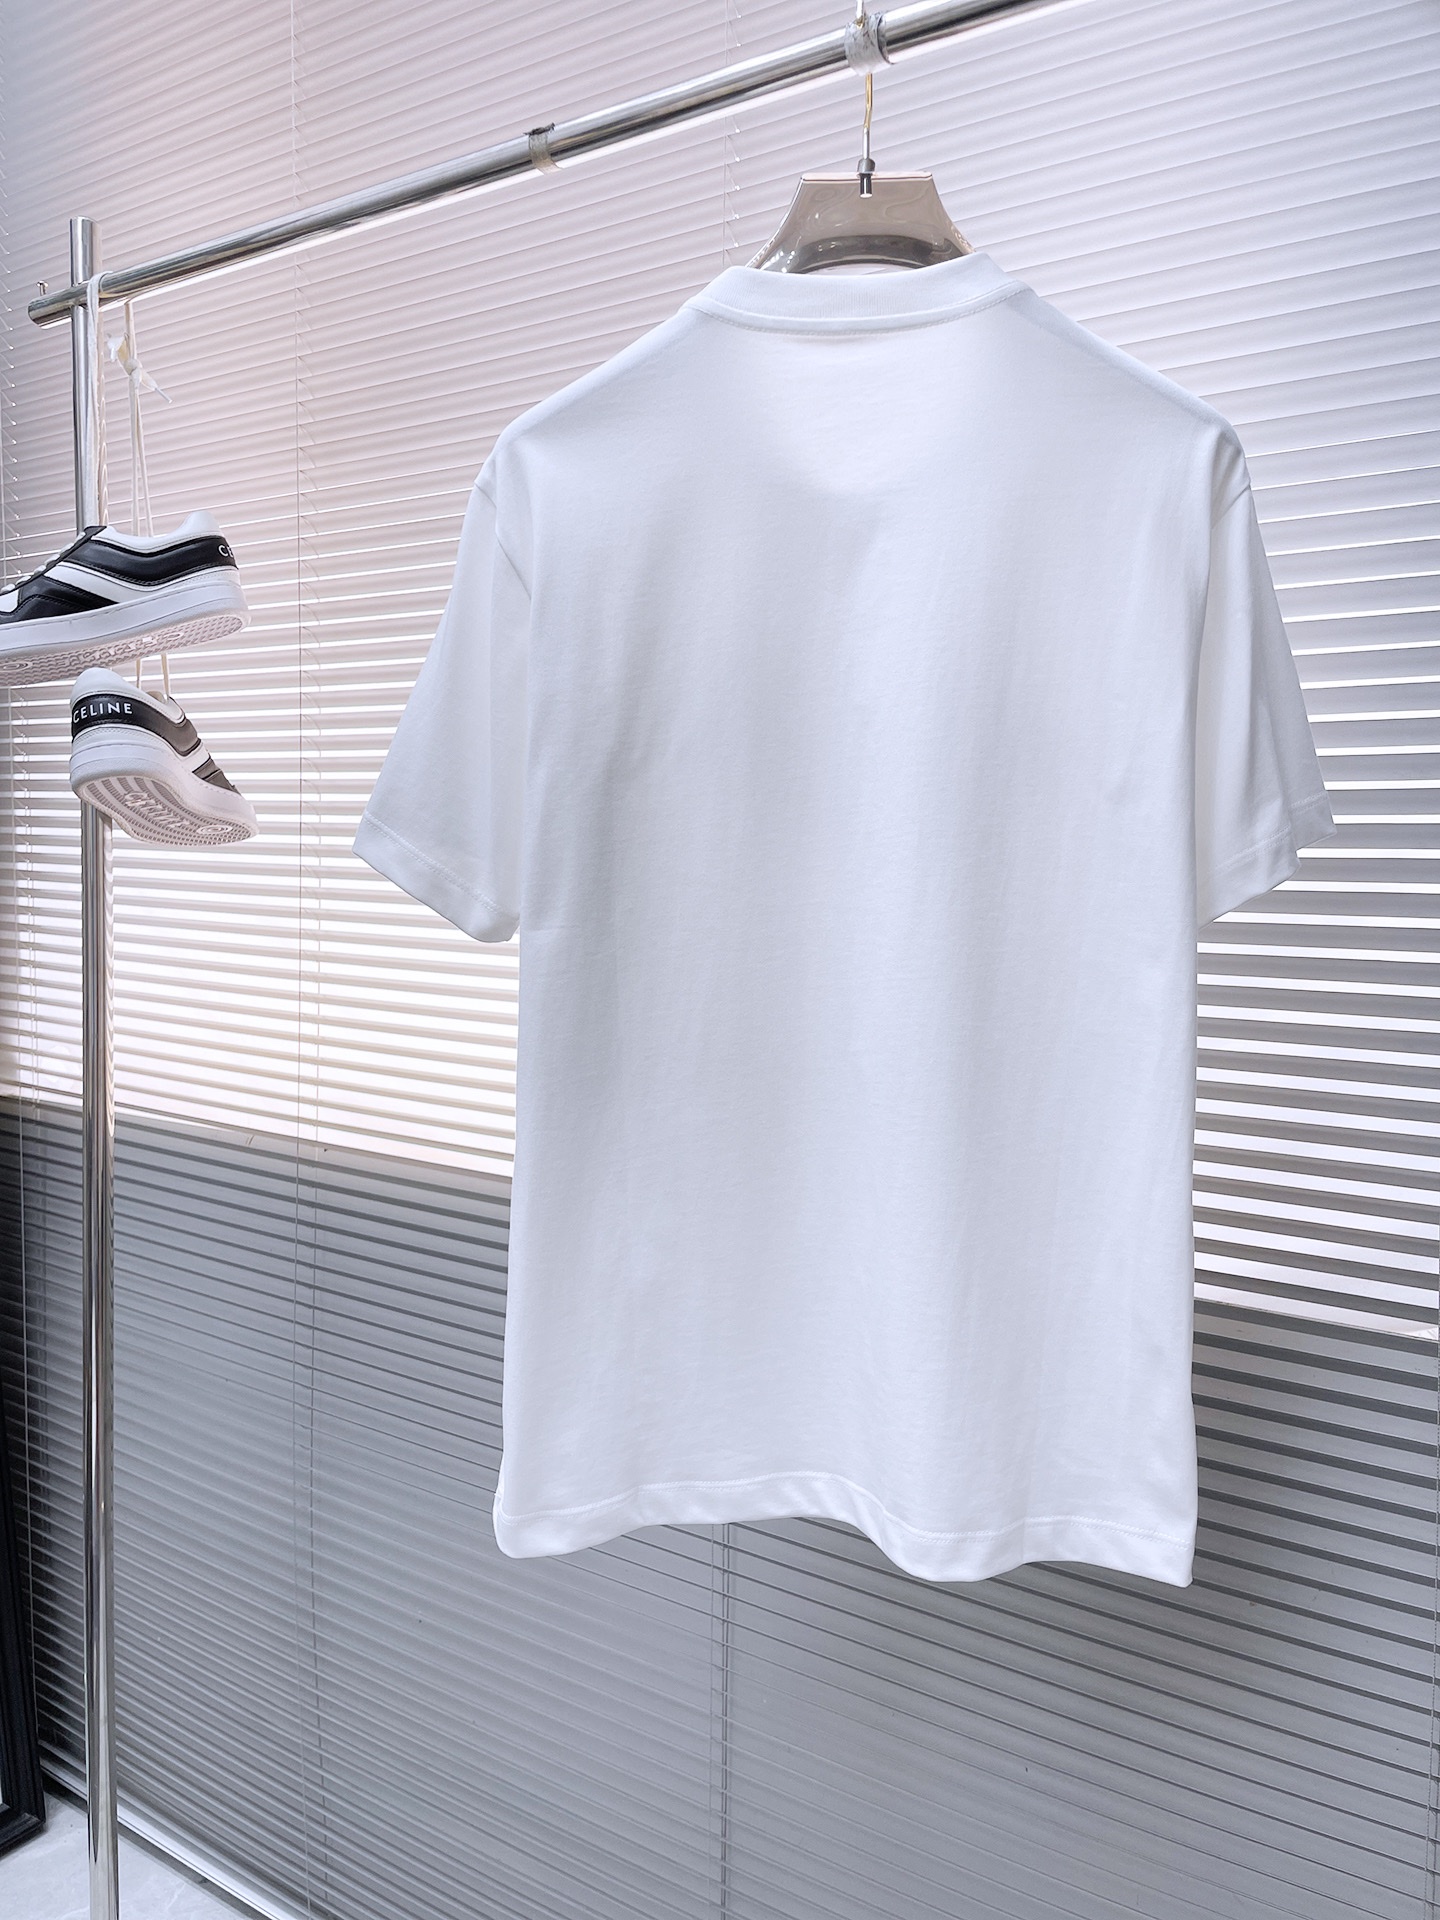 最安値人気 ロエベ 類似ブランド激安通販 純綿 短袖 Tシャツ トップス 柔らかい 快適 ゆったり ホワイト_2